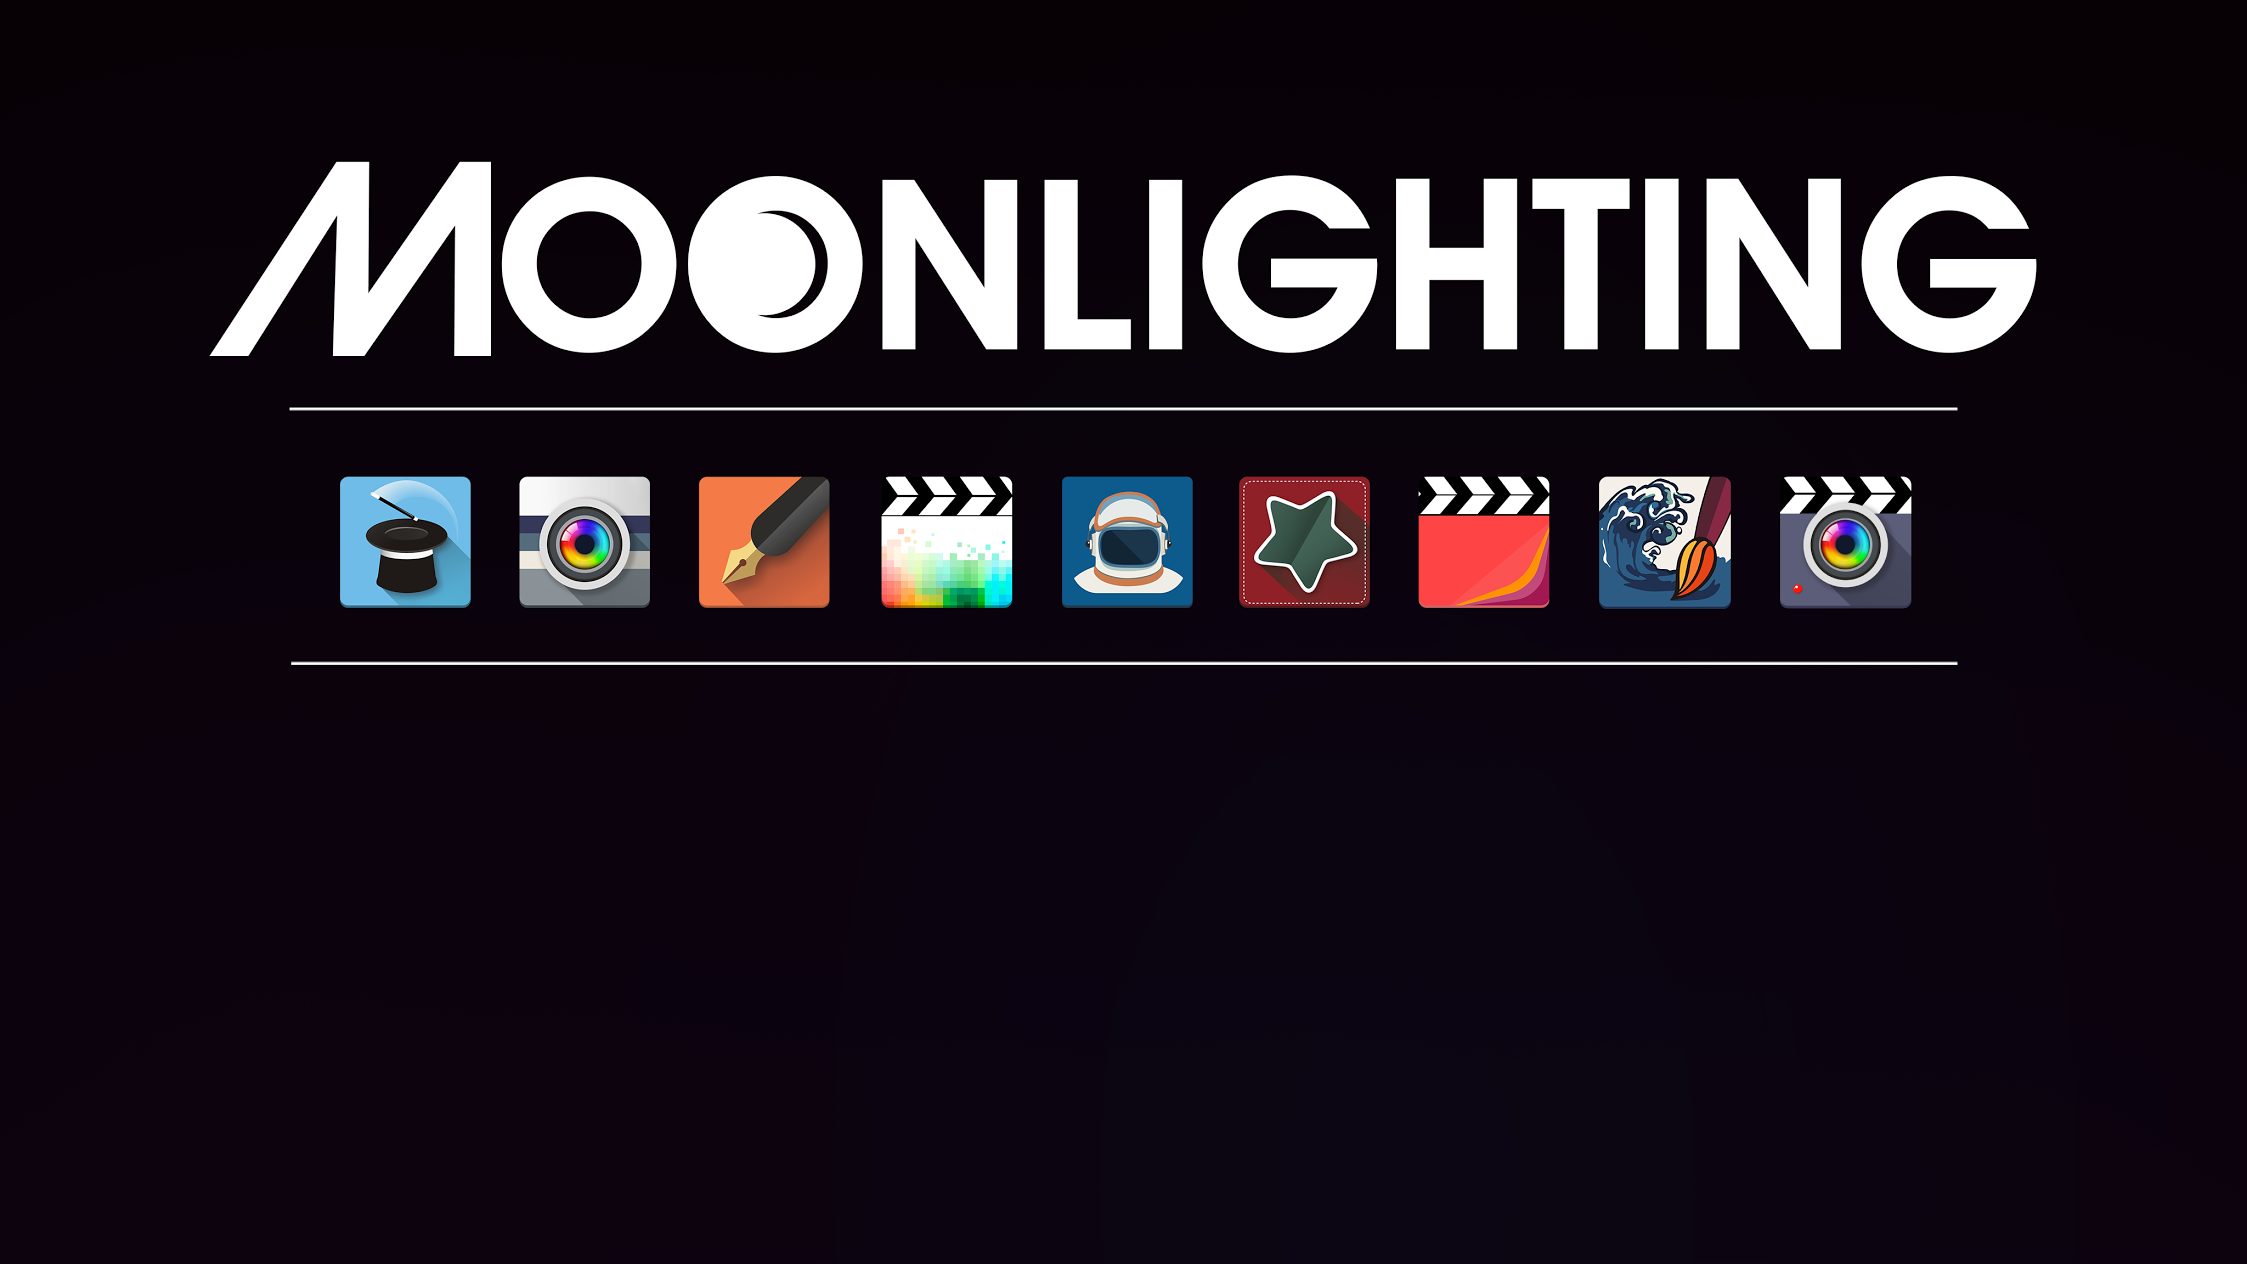 Moonlighting Apps, LLC